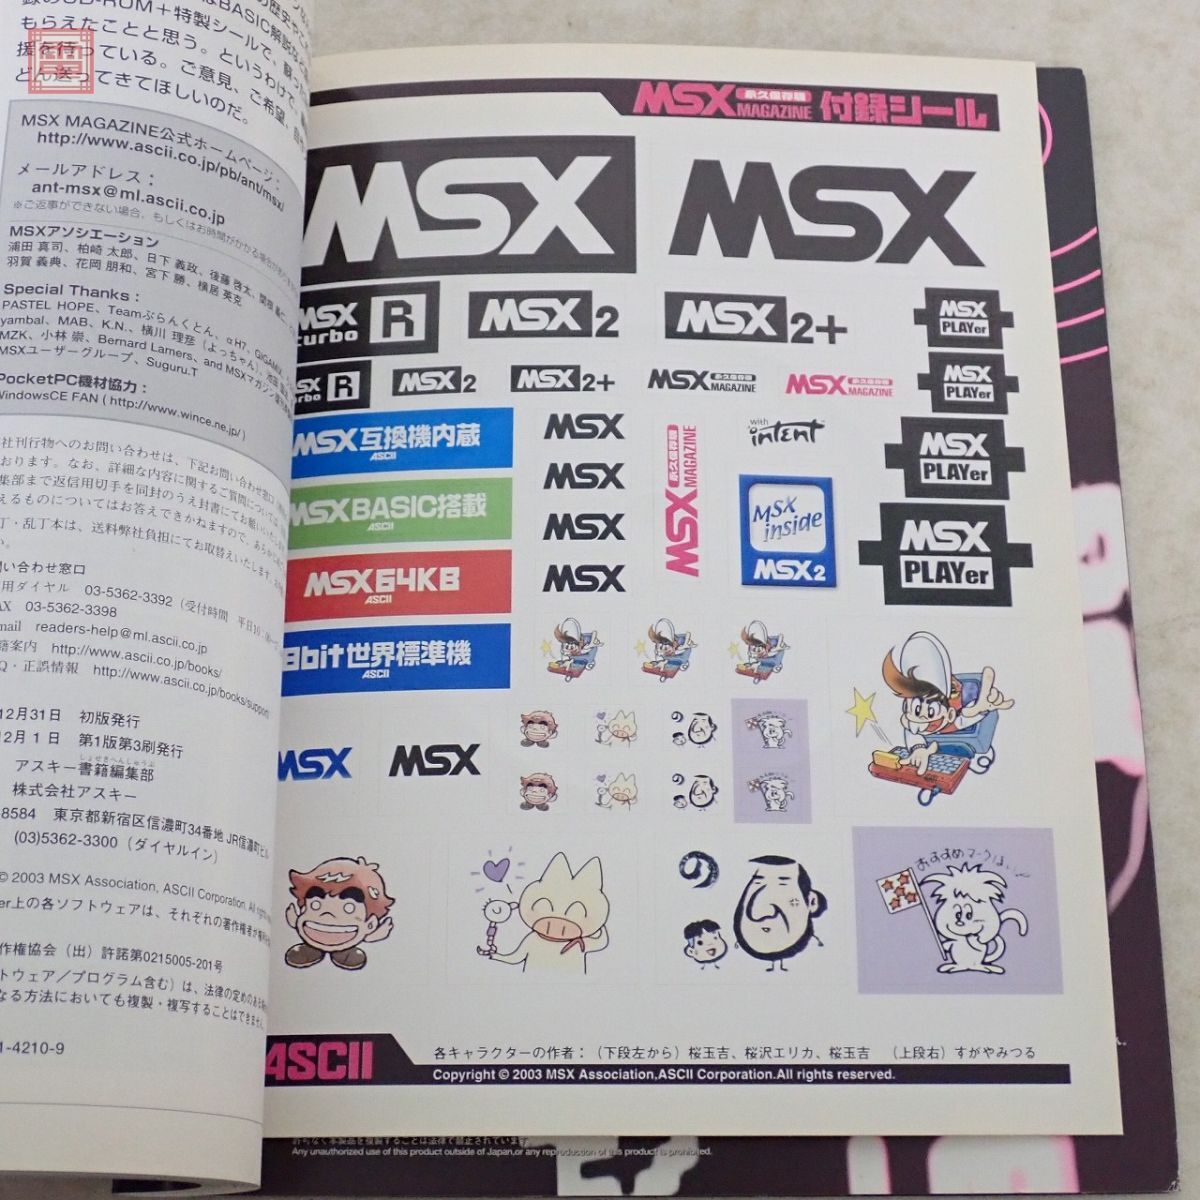 CD-ROM нераспечатанный литература MSX журнал долгосрочный сохранение версия Special производства наклейка есть ASCII ASCII MSX MAGAZINE[20